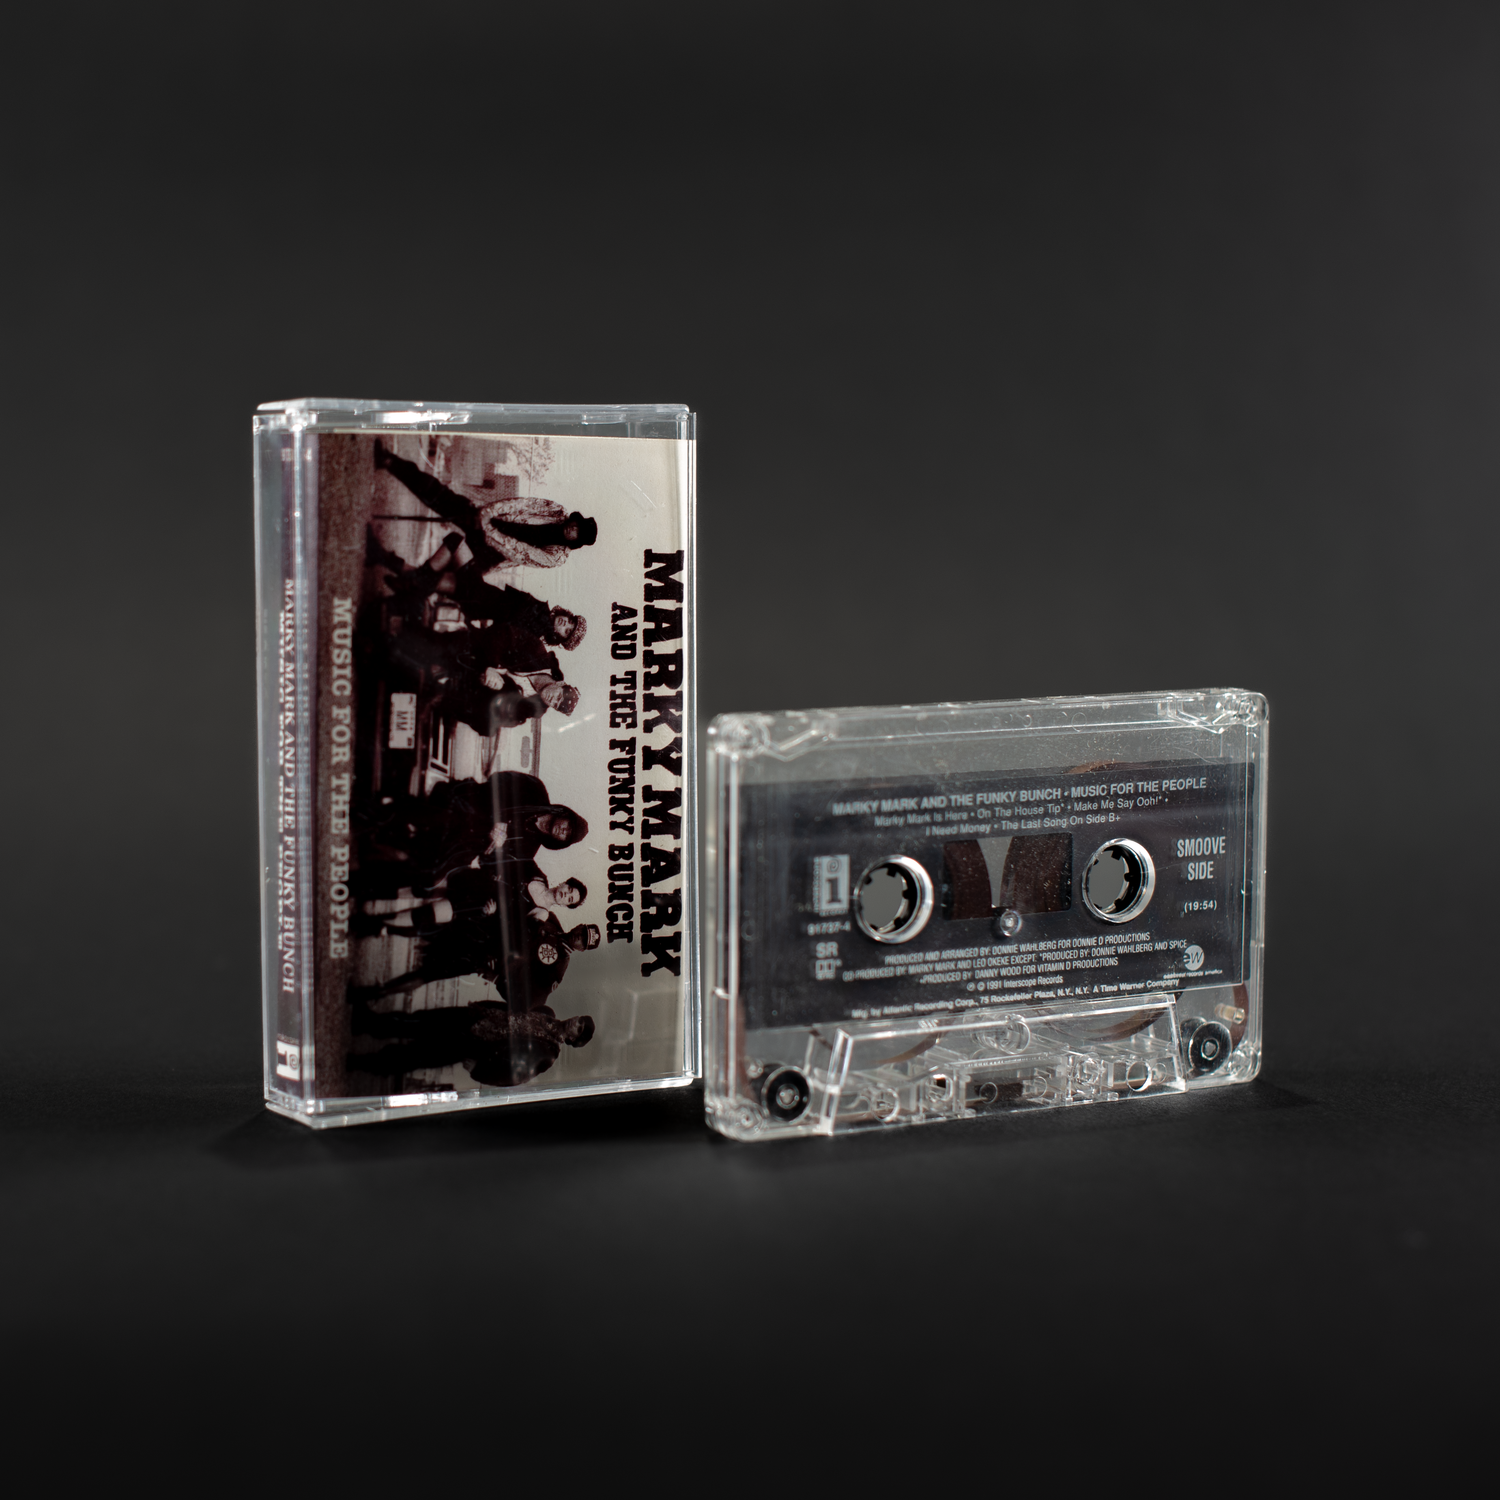 Marky Mark - Musique pour le peuple (cassette vintage)